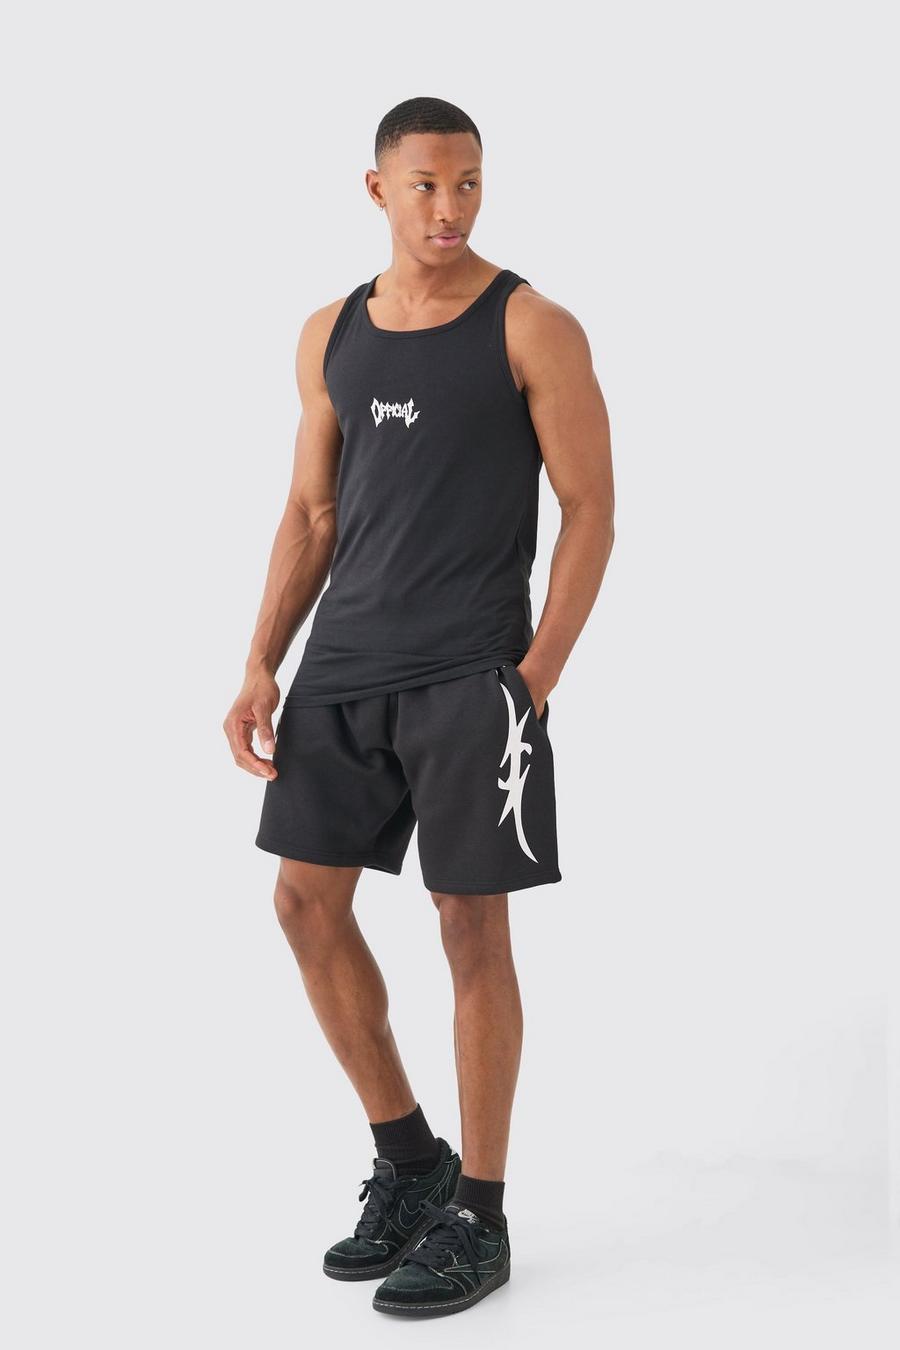 Black Muscle Fit Graphic Official Vest & Shorts Set